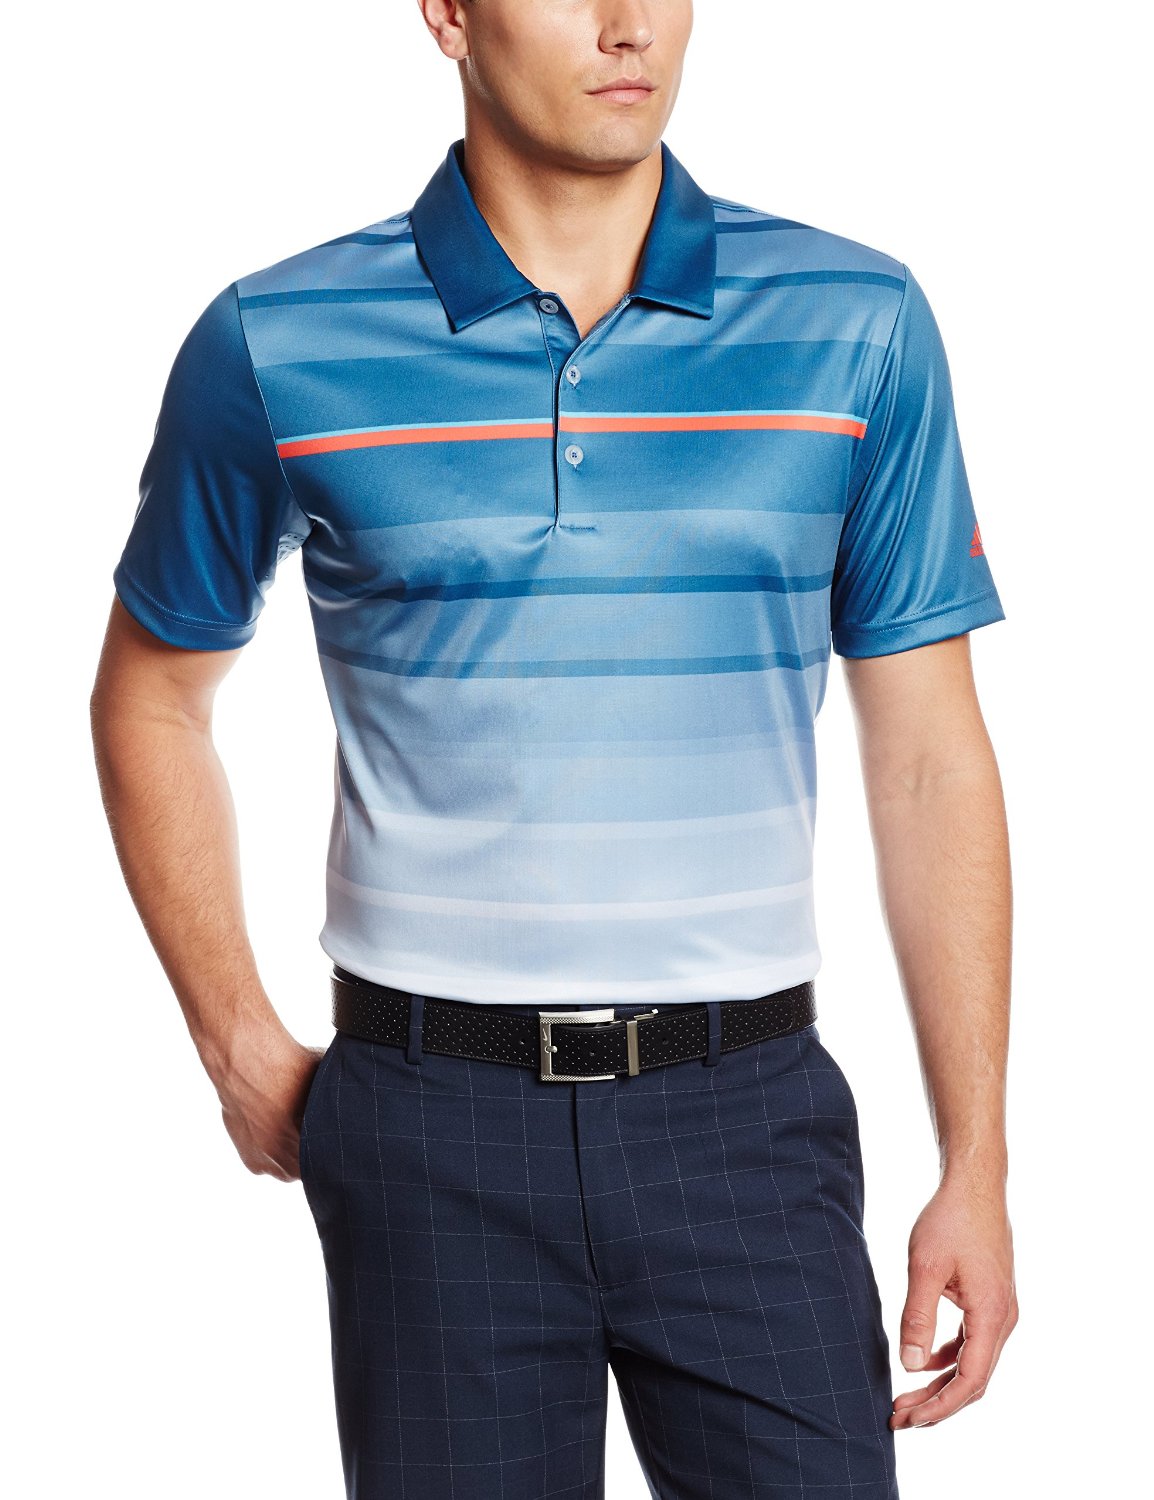 Adidas Mens Puremotion Climacool Tour Golf Polo Shirts